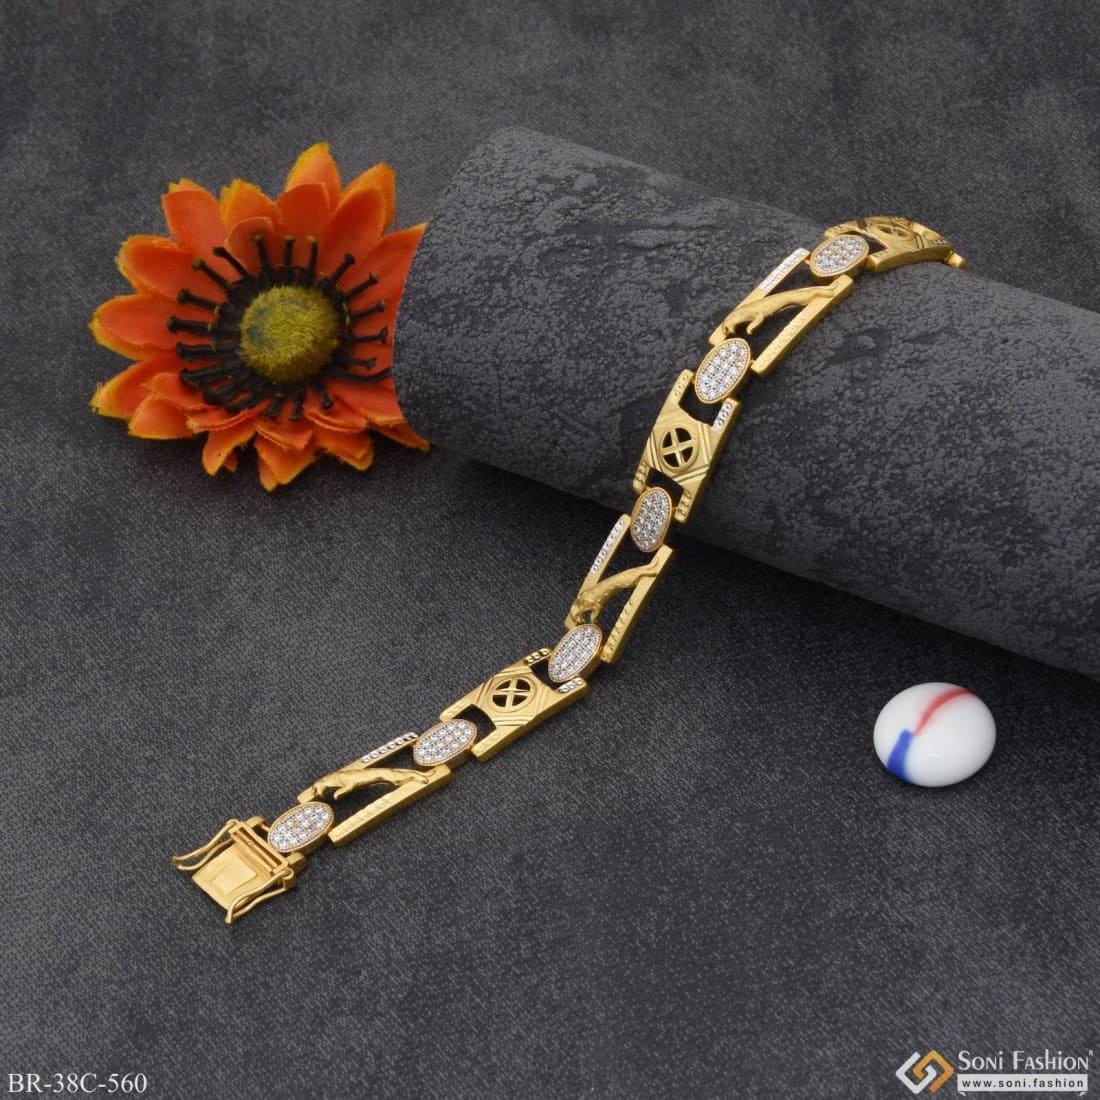 Antique Bracelet | Jewelry bracelets gold, Antique bracelets, Antique gold  bracelet